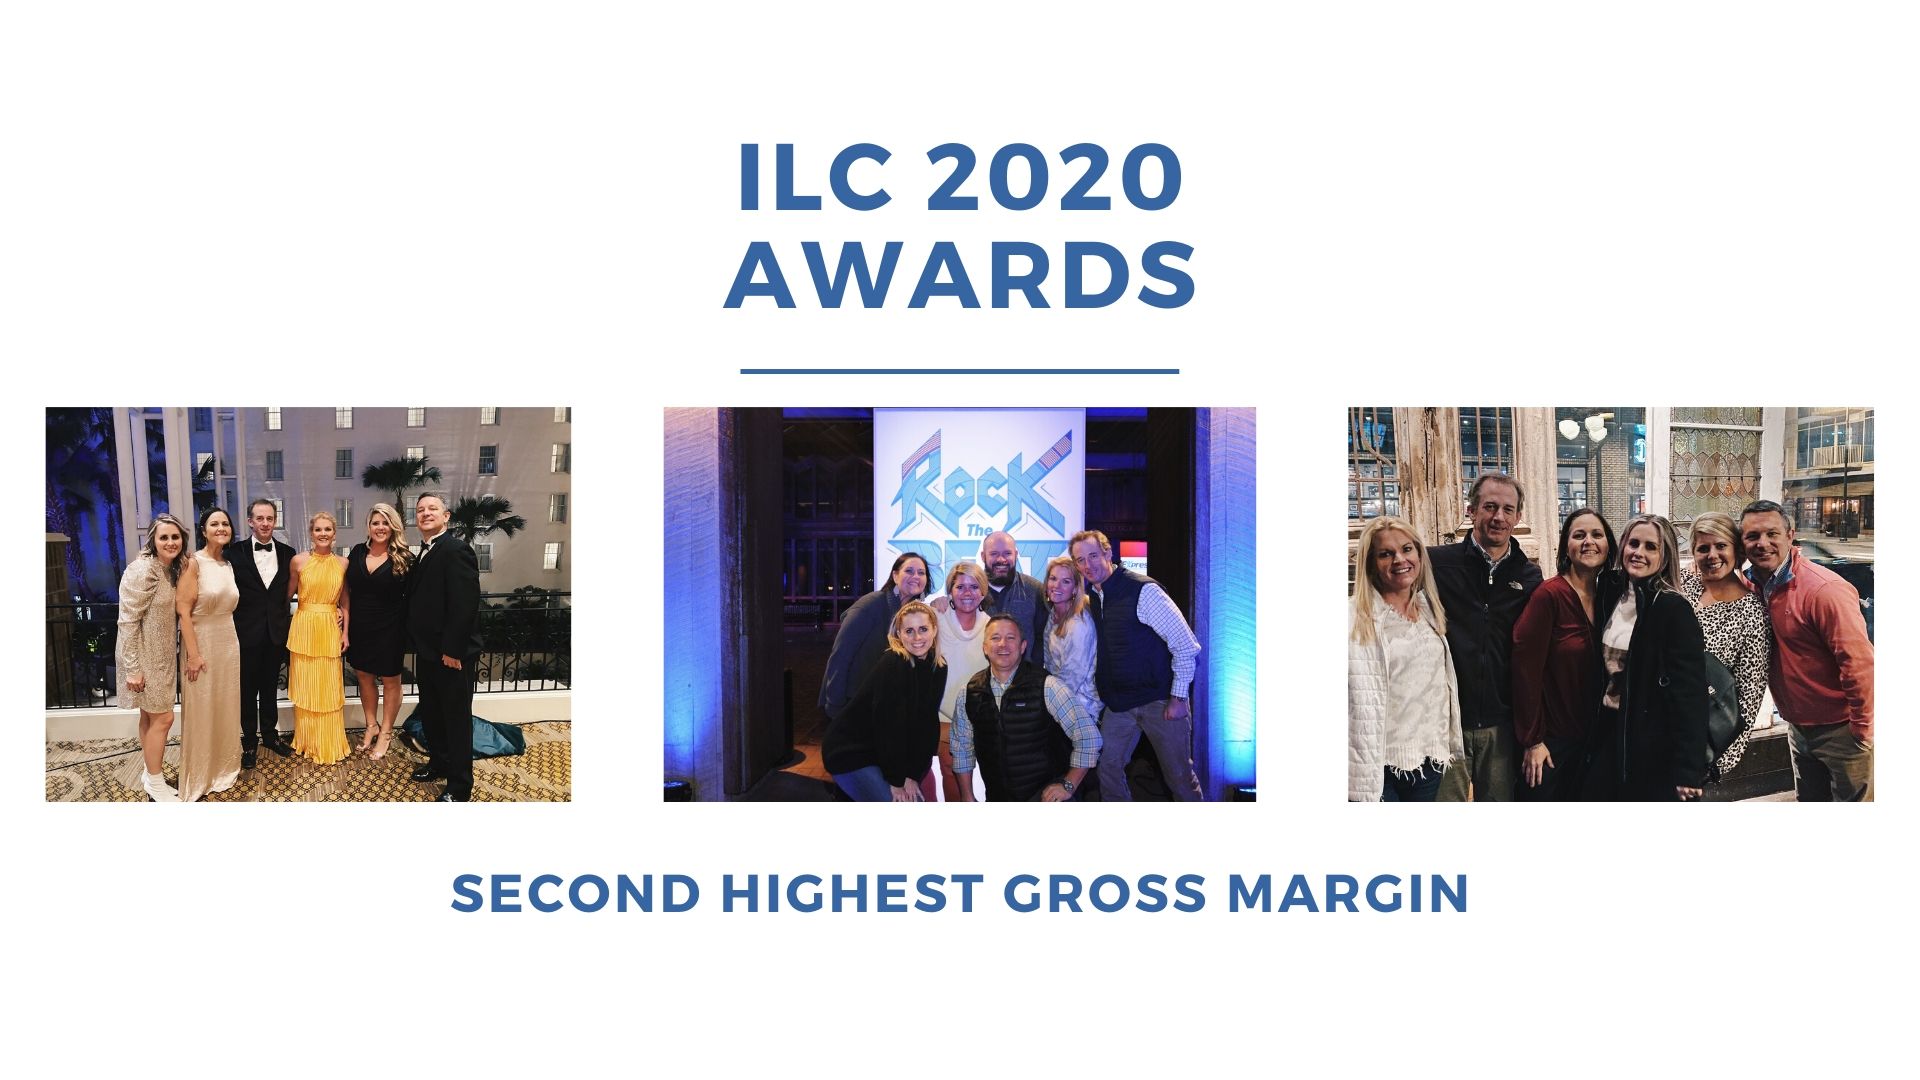 ILC 2020 Awards